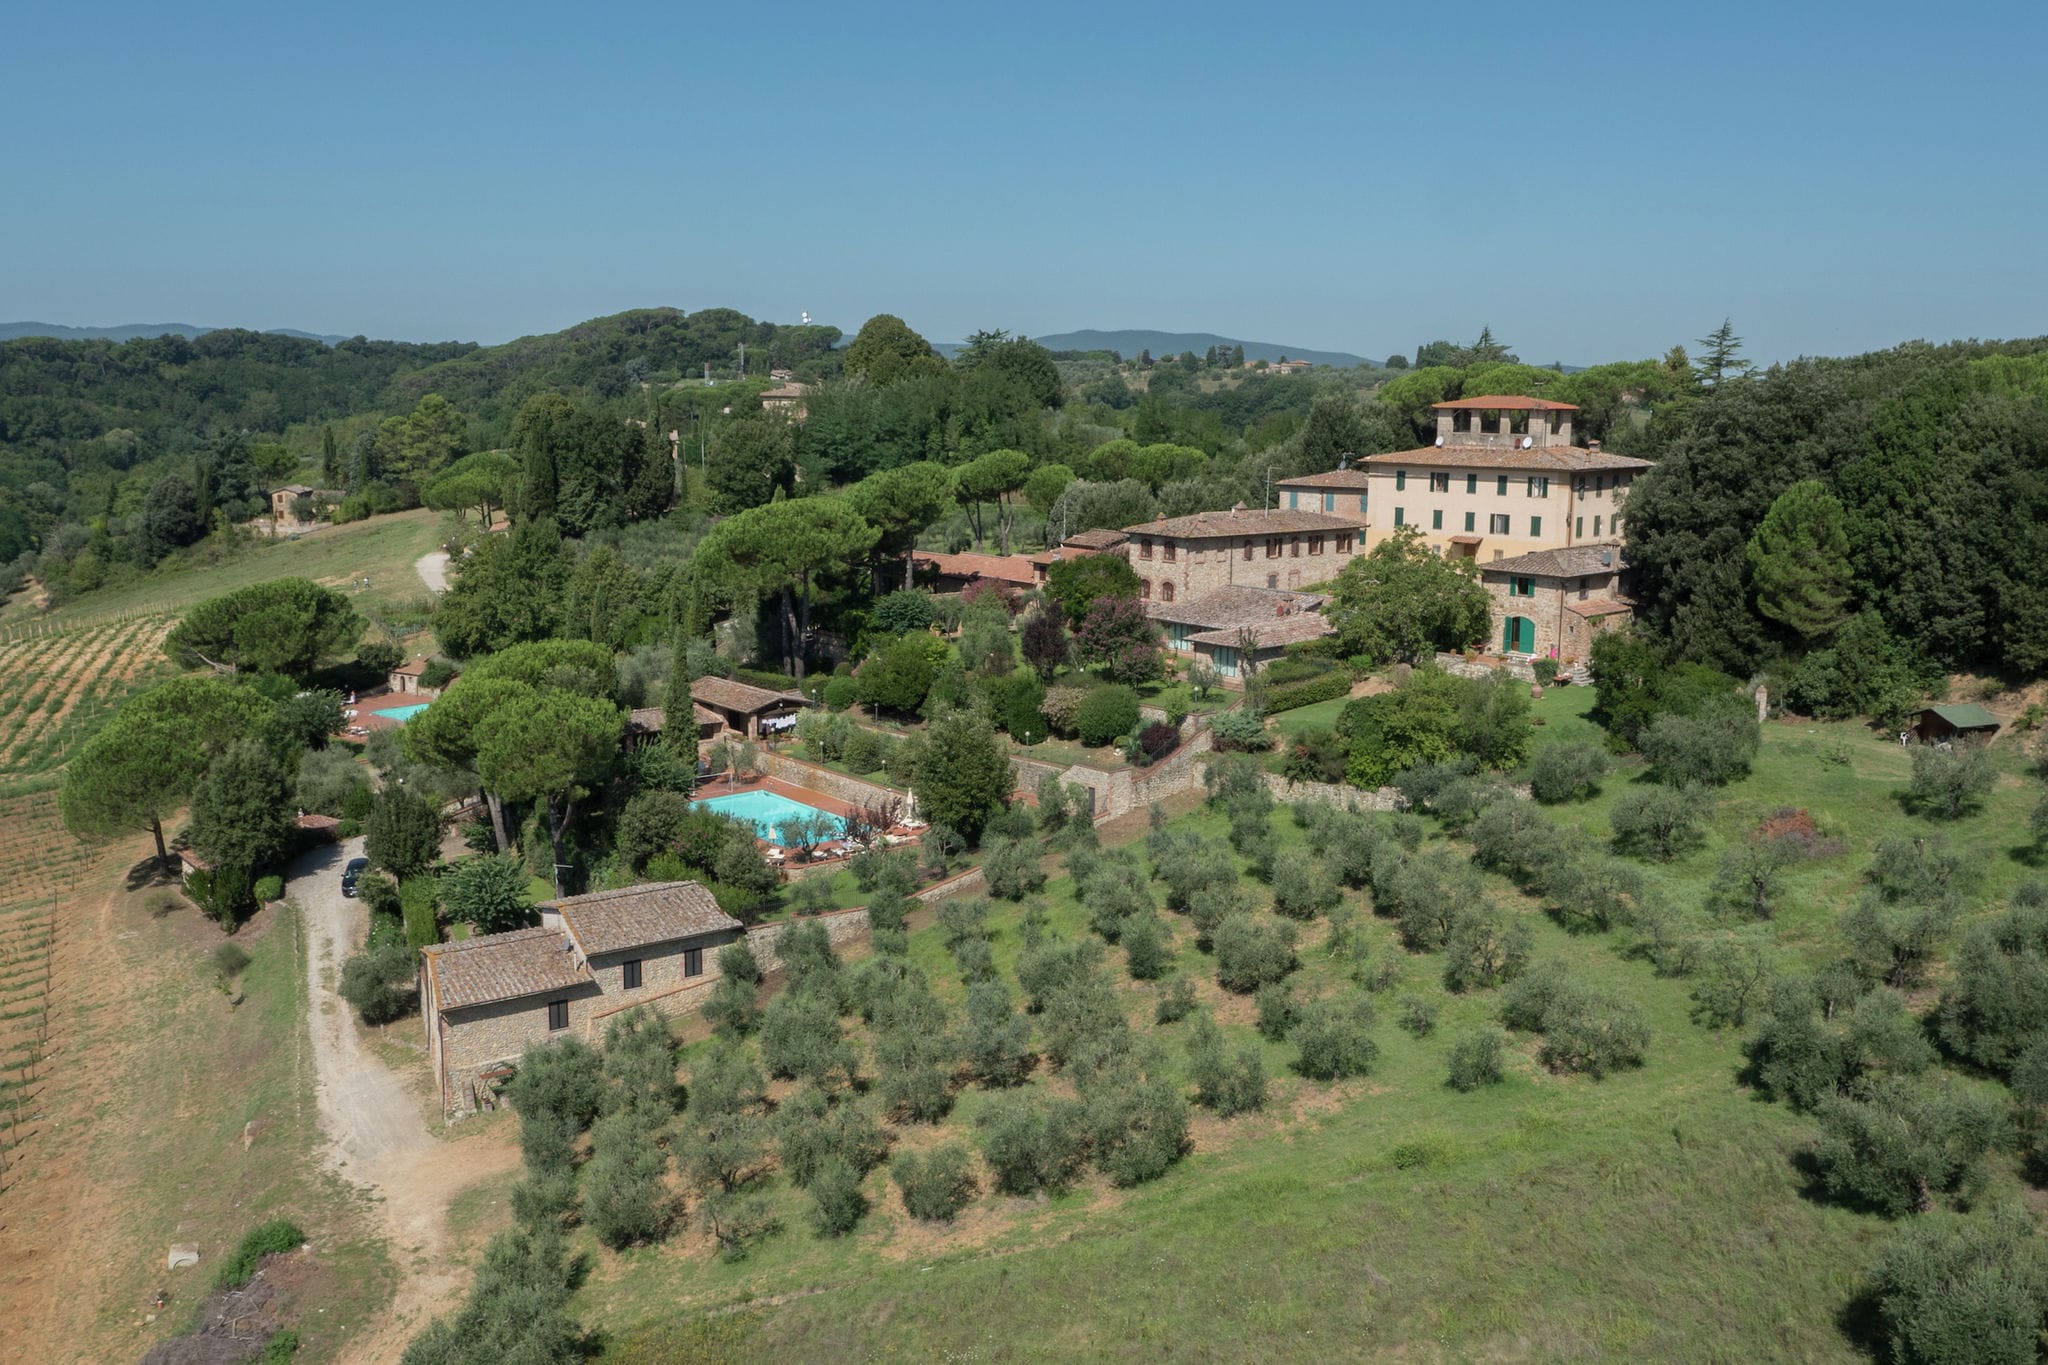 Gemütliches Ferienhaus mit Pool in Siena Italien